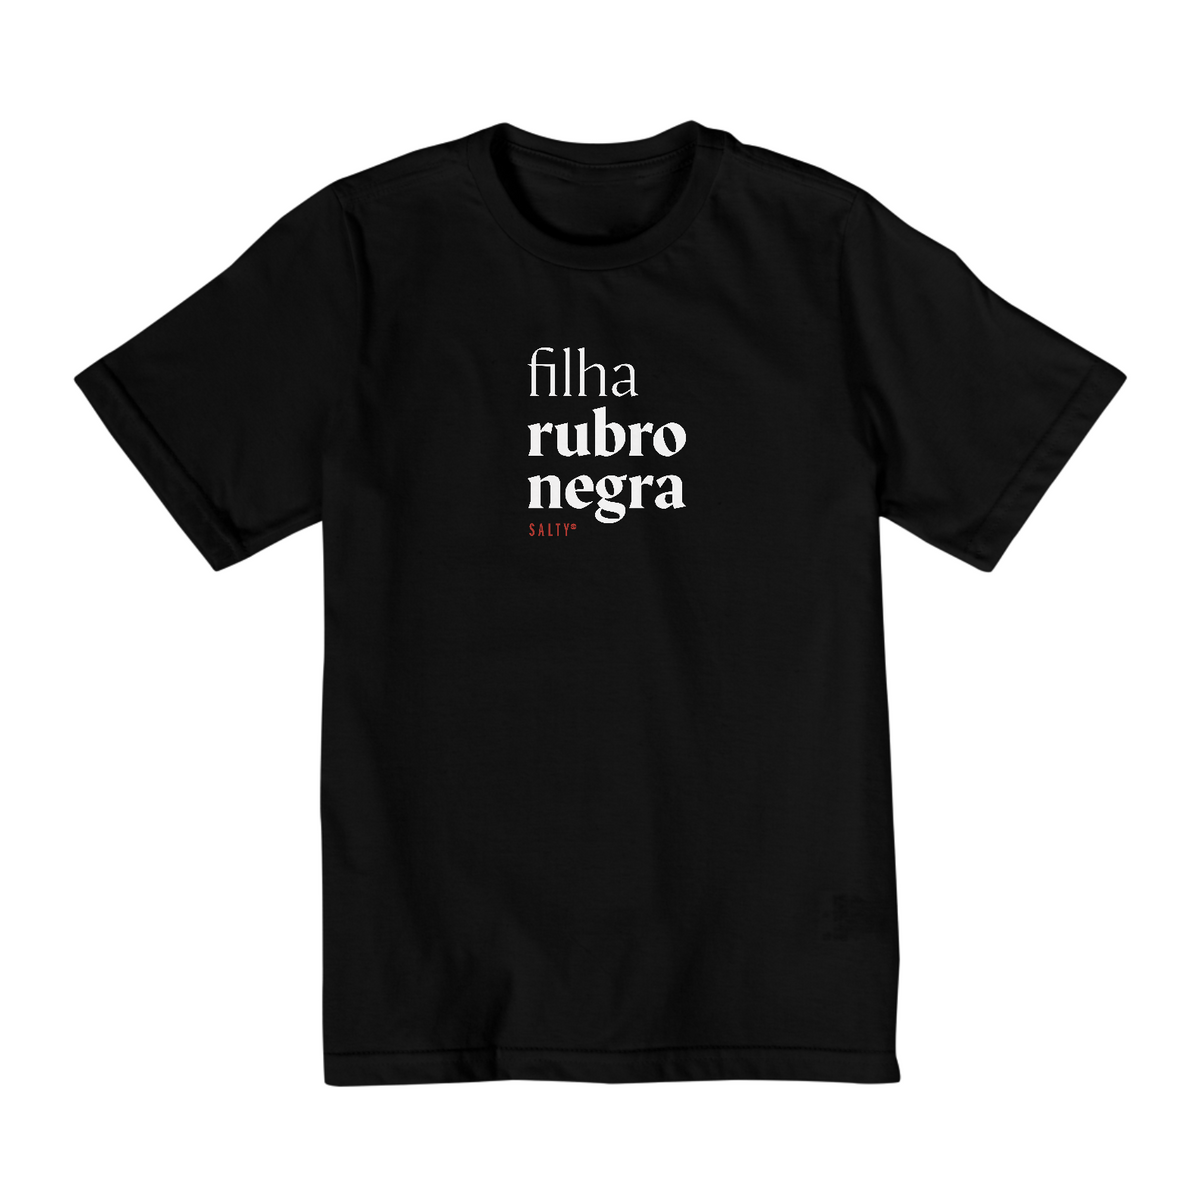 Nome do produto: Camiseta Inf. Filha rubro negra